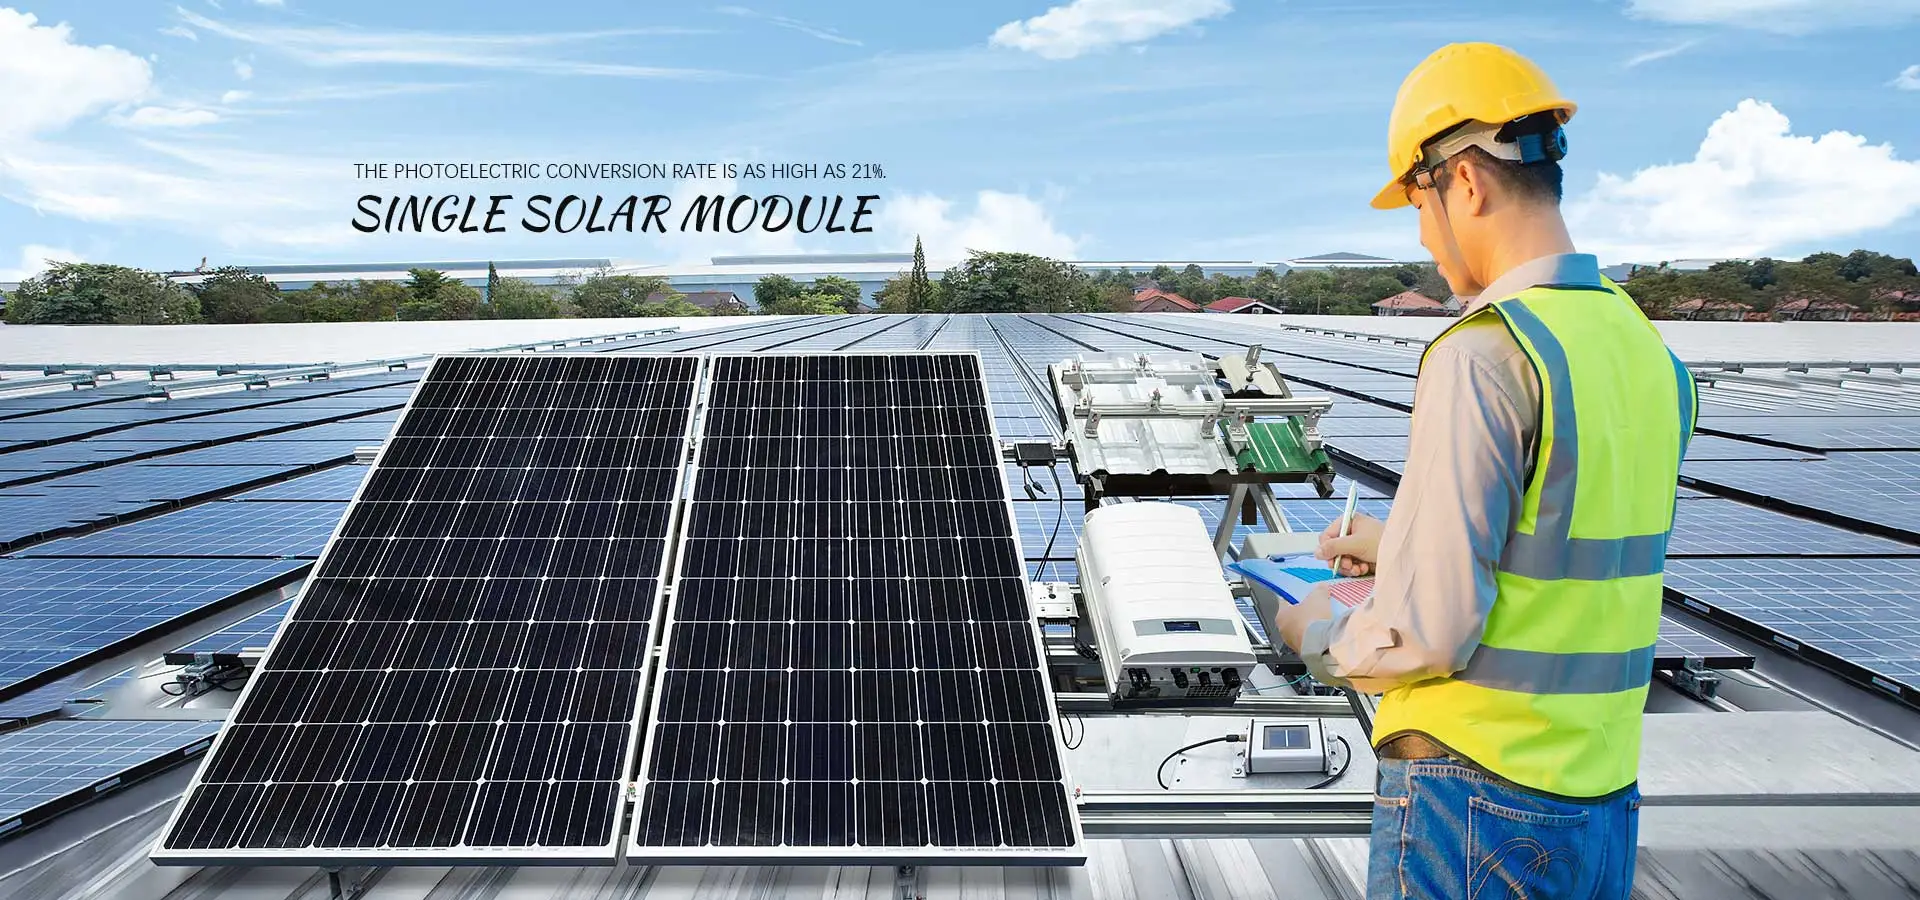 Fabricants et usine de modules solaires à verre unique